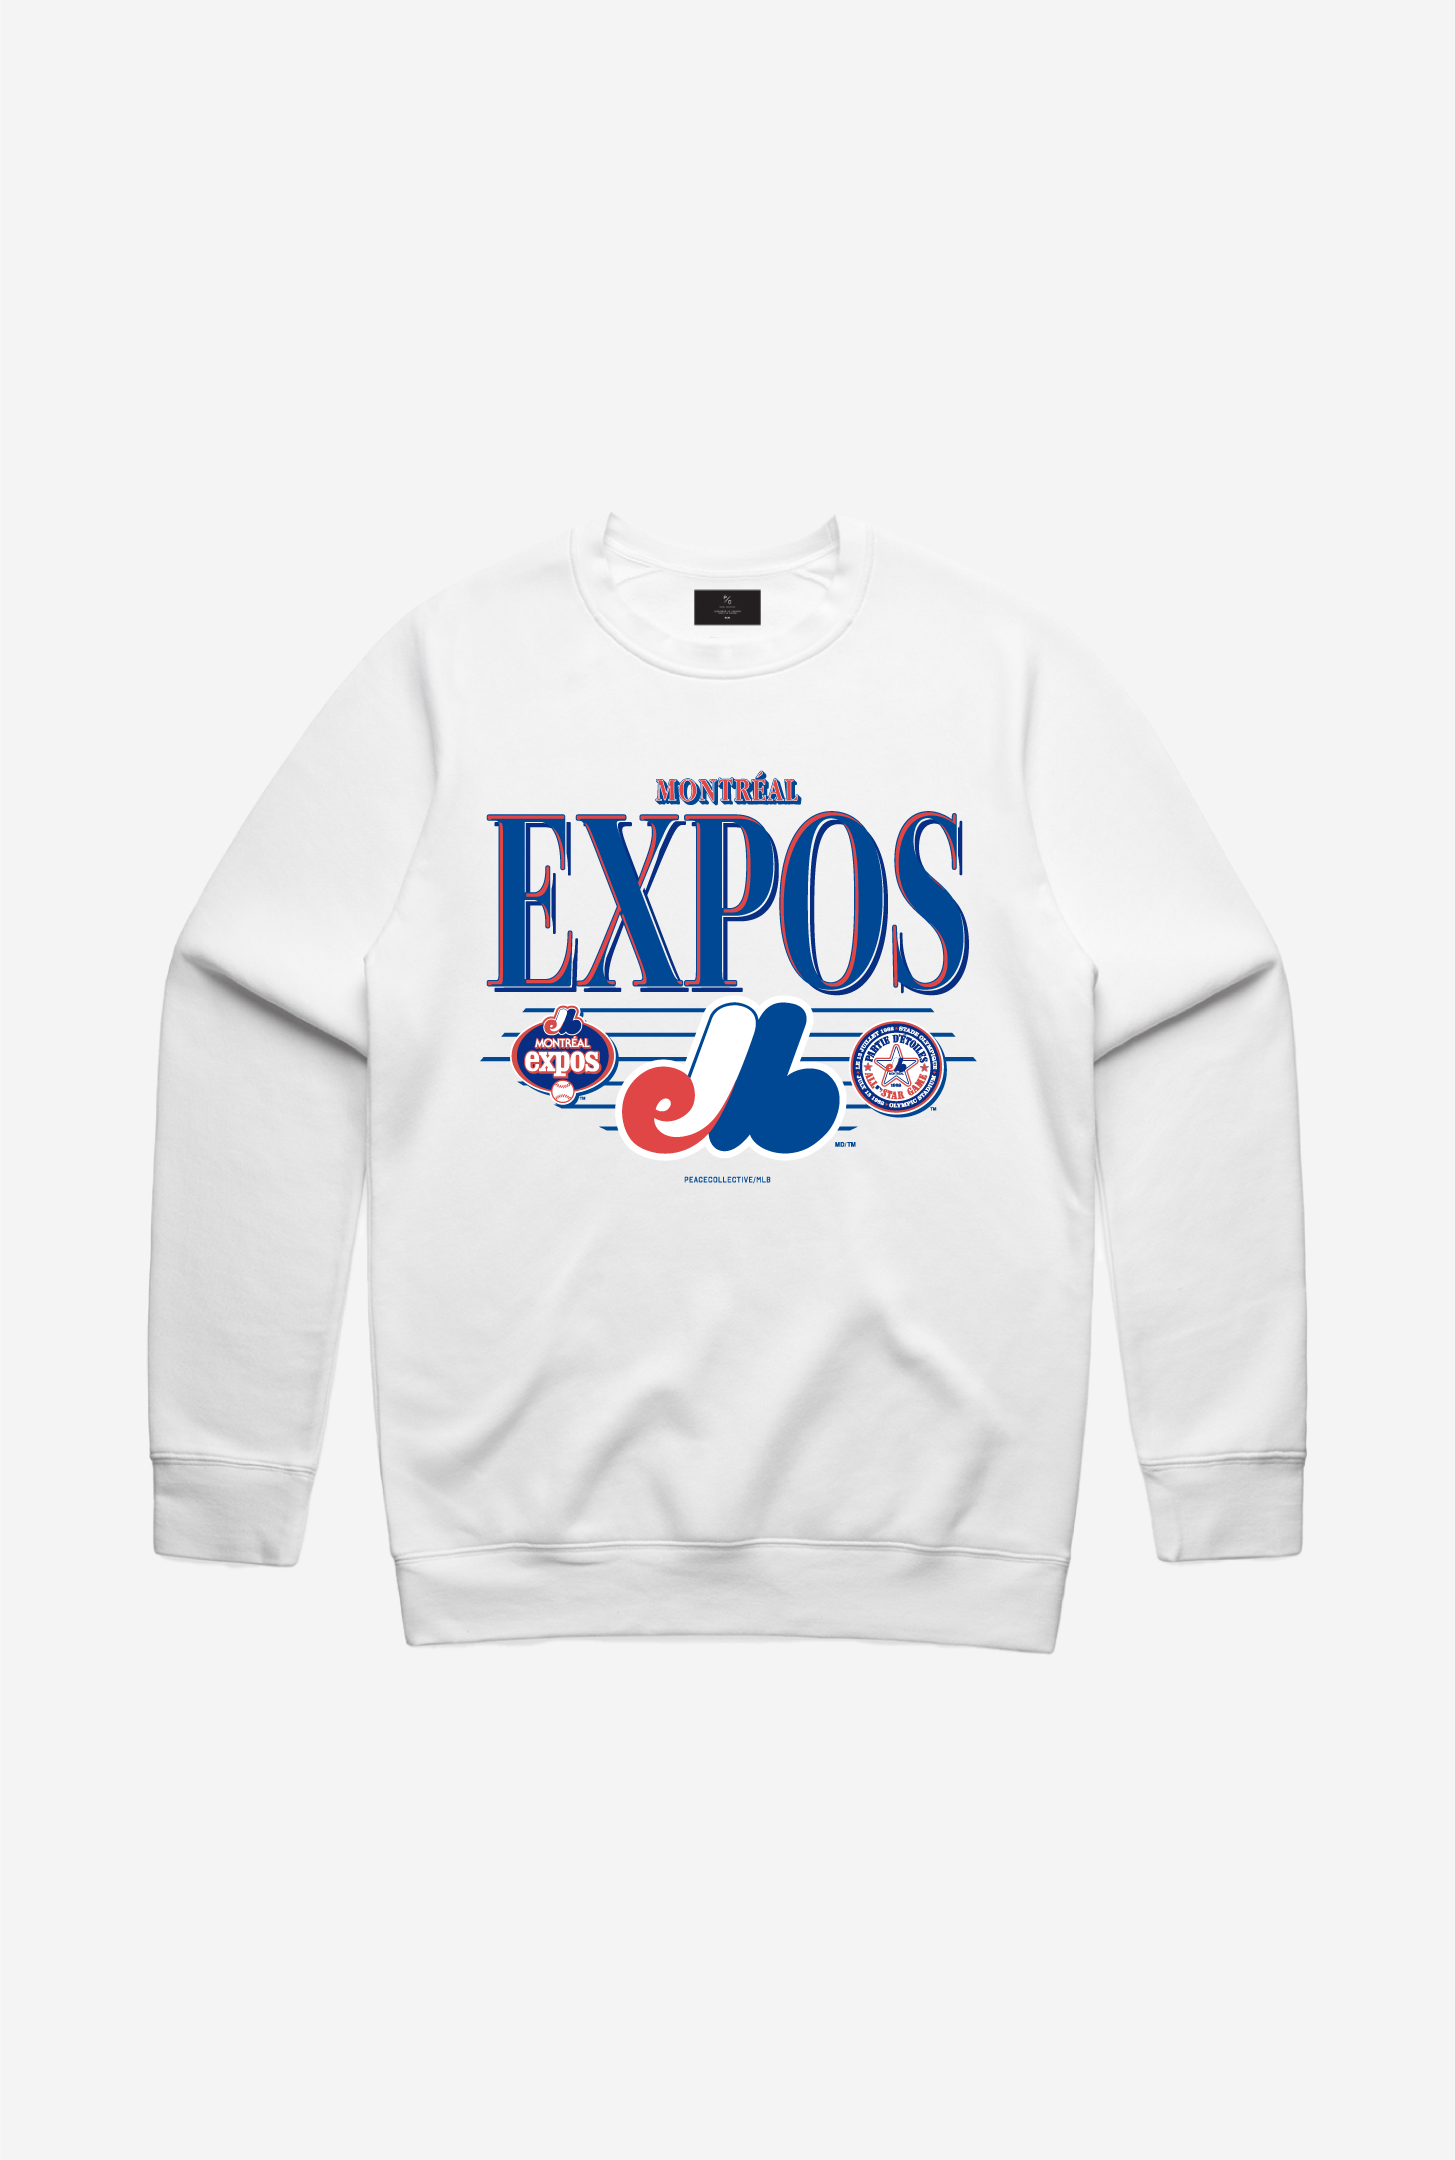 Montreal Expos Throwback Crewneck - White